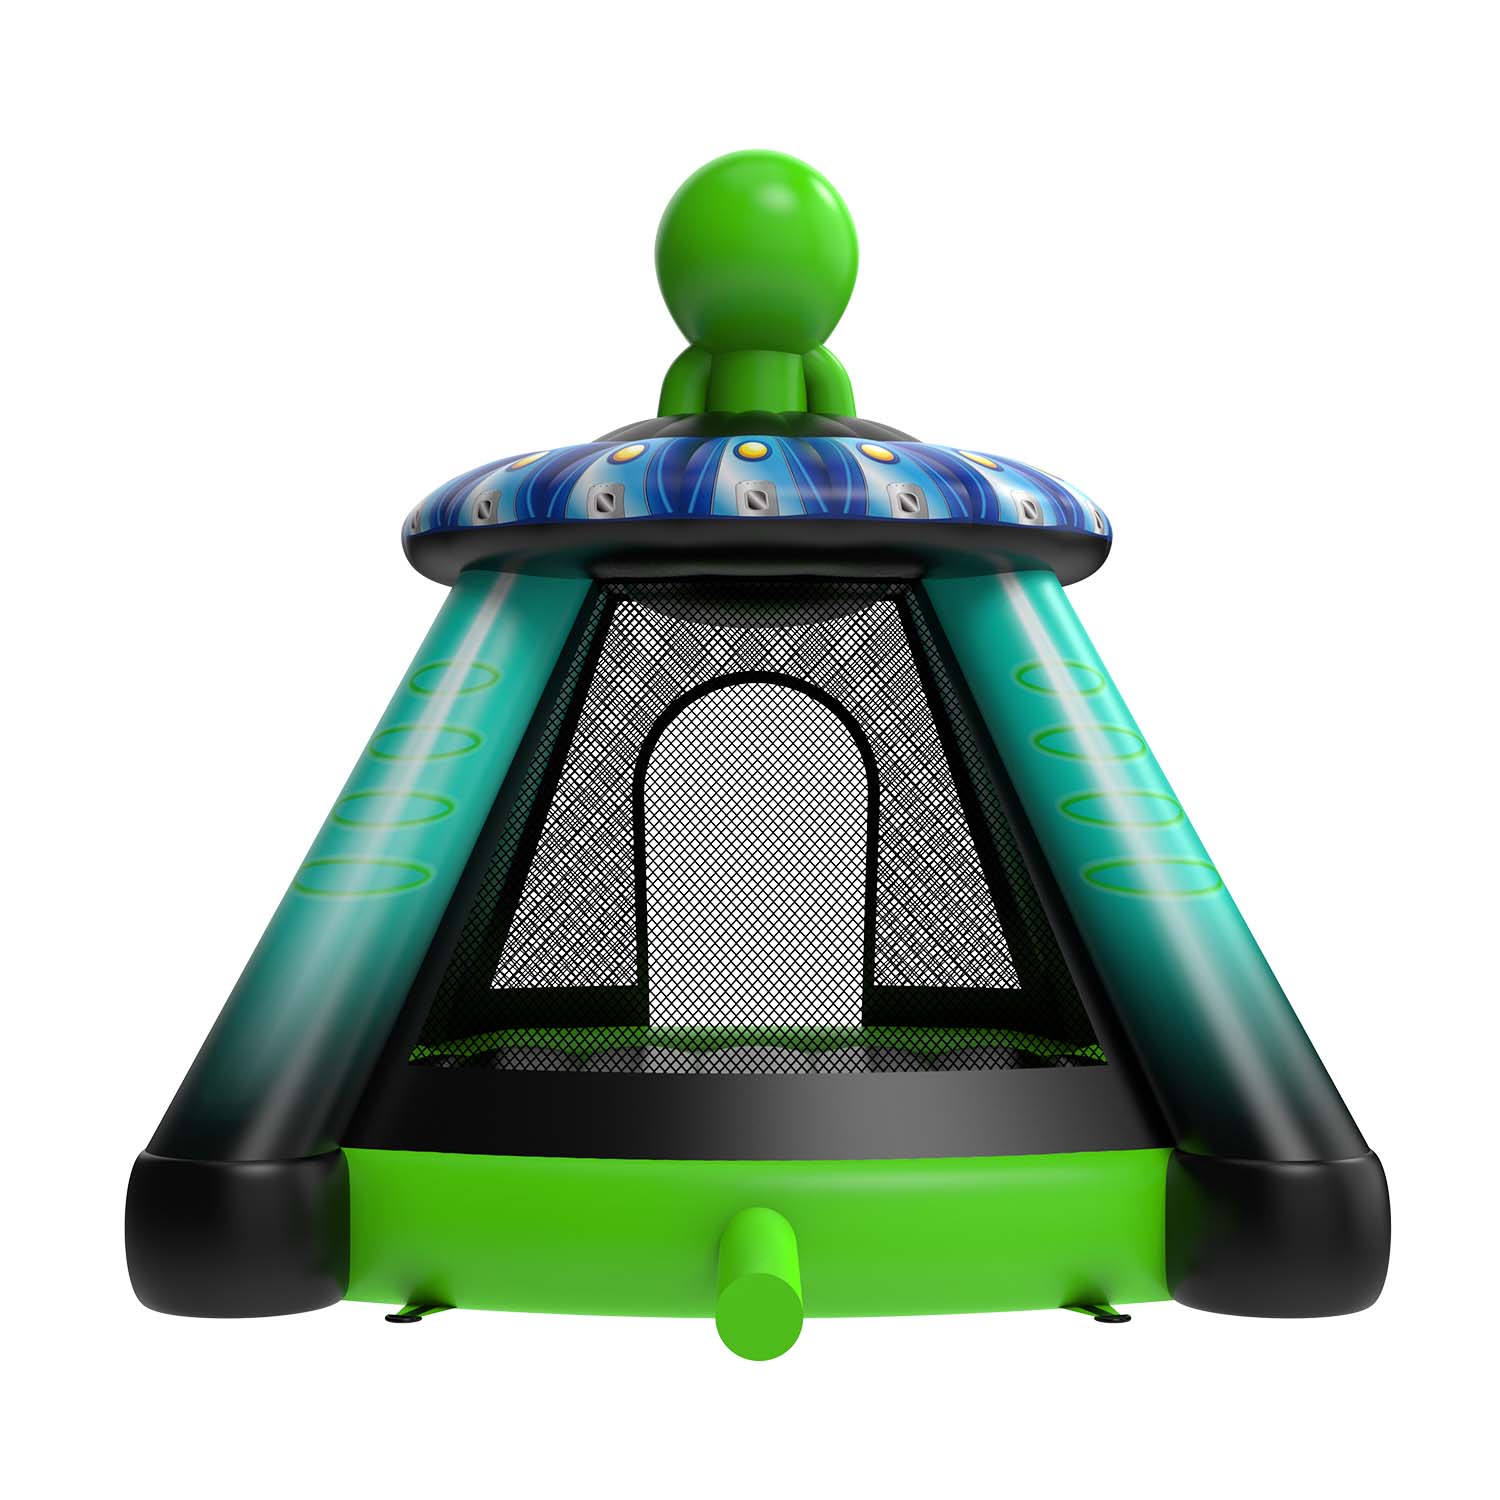 New Design Alien Inflatable Bounce HouseYG-161